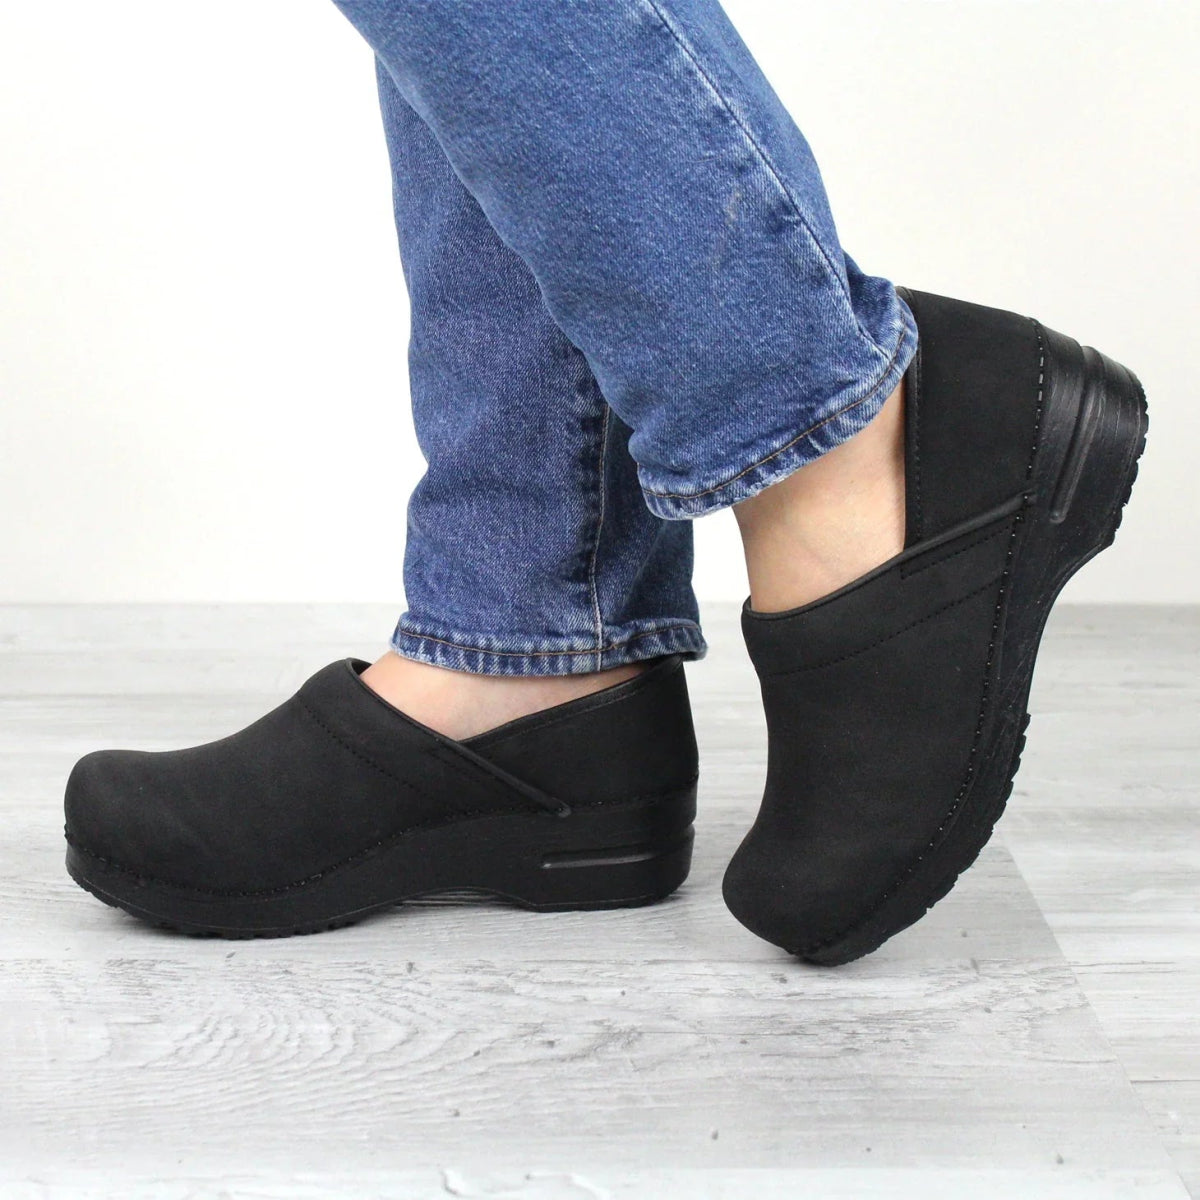 SANITA HINSDALE WOMEN CLOG IN BLACK - TLW Shoes